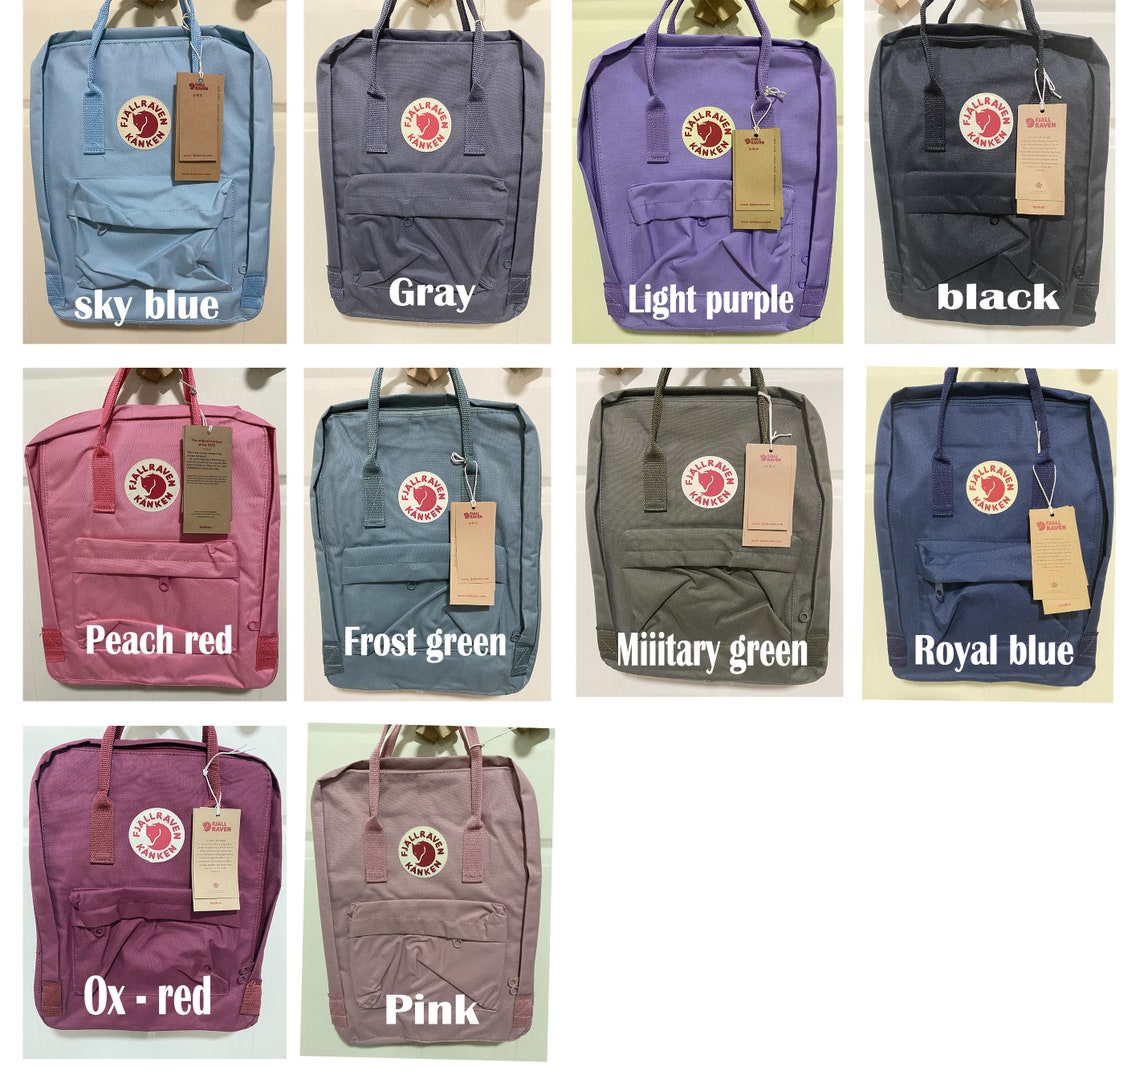 Fjallraven Kanken Backpack Custom Embroidered Heartstopper - Etsy